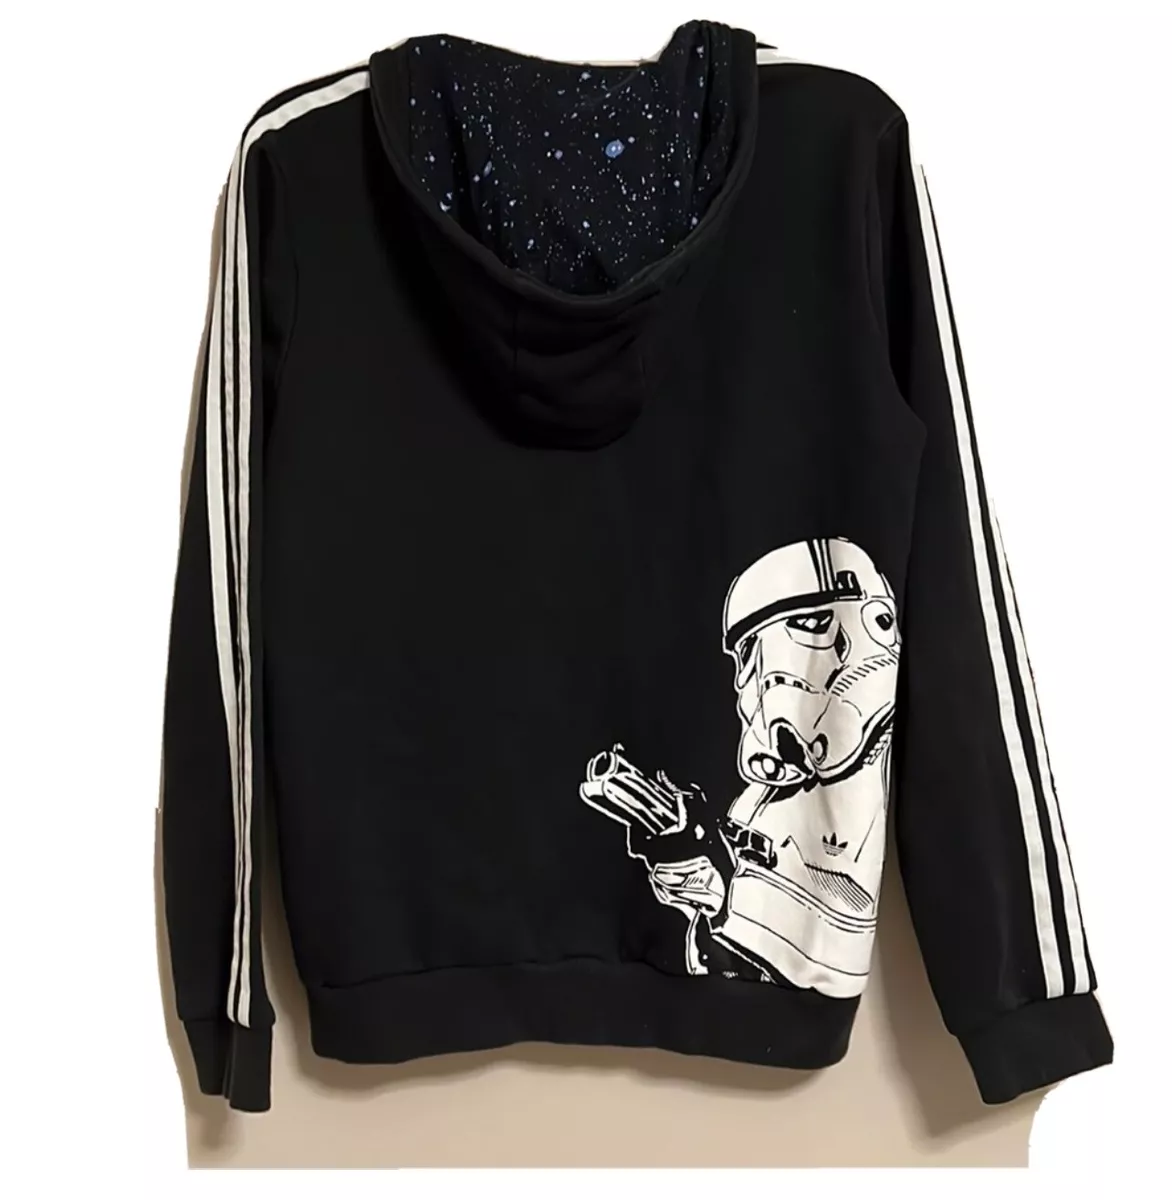 Cariñoso metodología Guijarro Adidas Star Wars Stormtrooper Hoodie Jacket Youth Large 13/14 Black | eBay